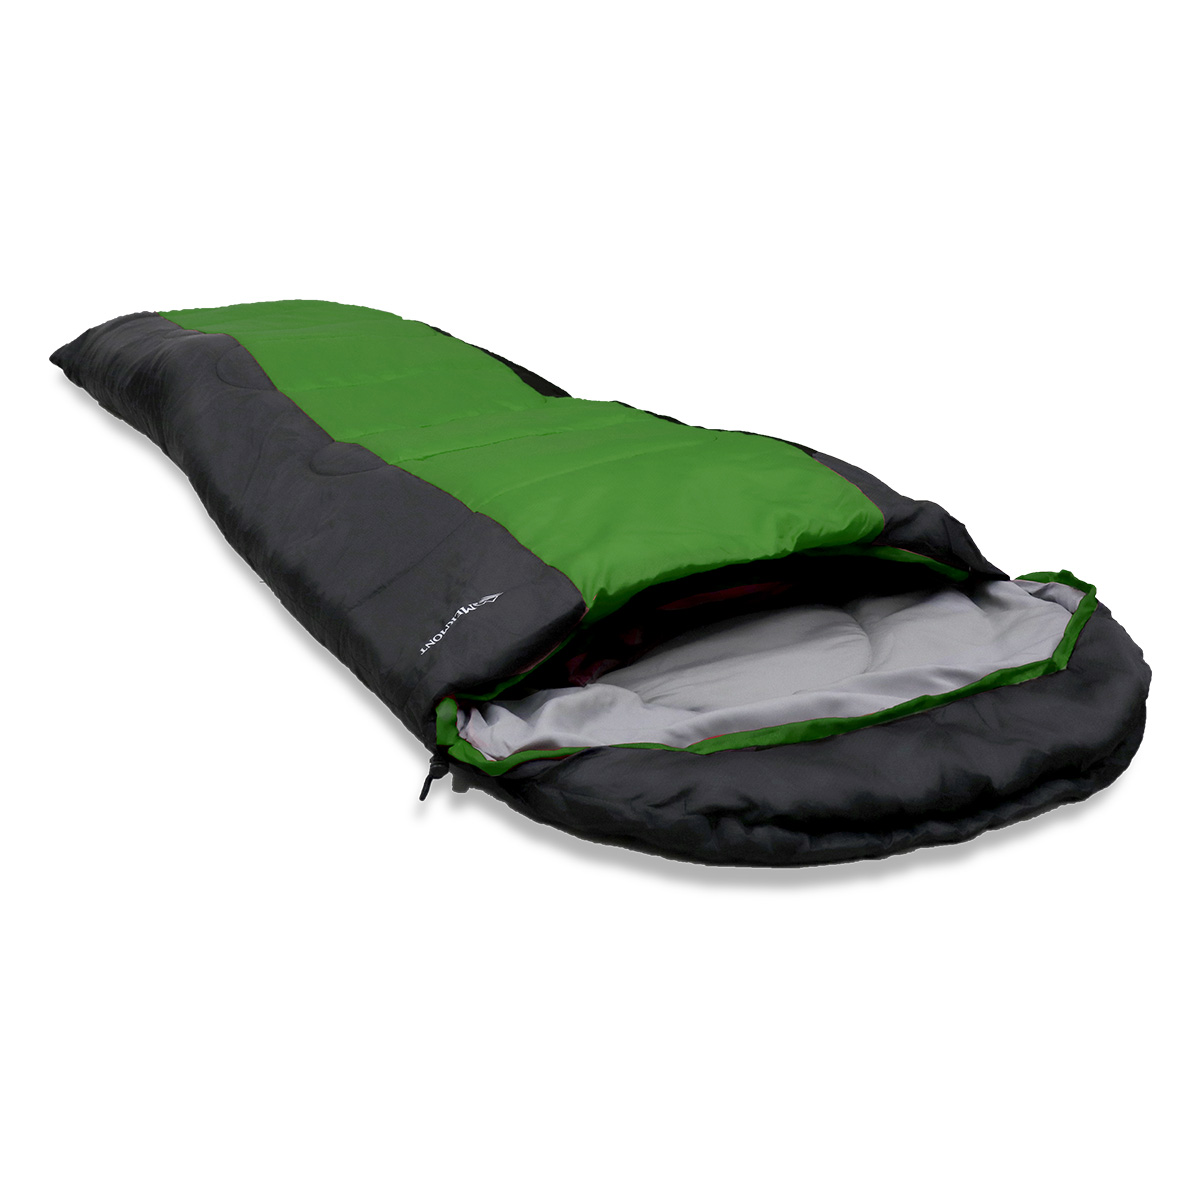 寝袋 シュラフ 封筒型 -6℃ 洗える 2個セット オールシーズン 軽量 コンパクト 登山 キャンプ ツーリング アウトドア 春 秋 防寒 暖かい  MERMONT オールシーズン